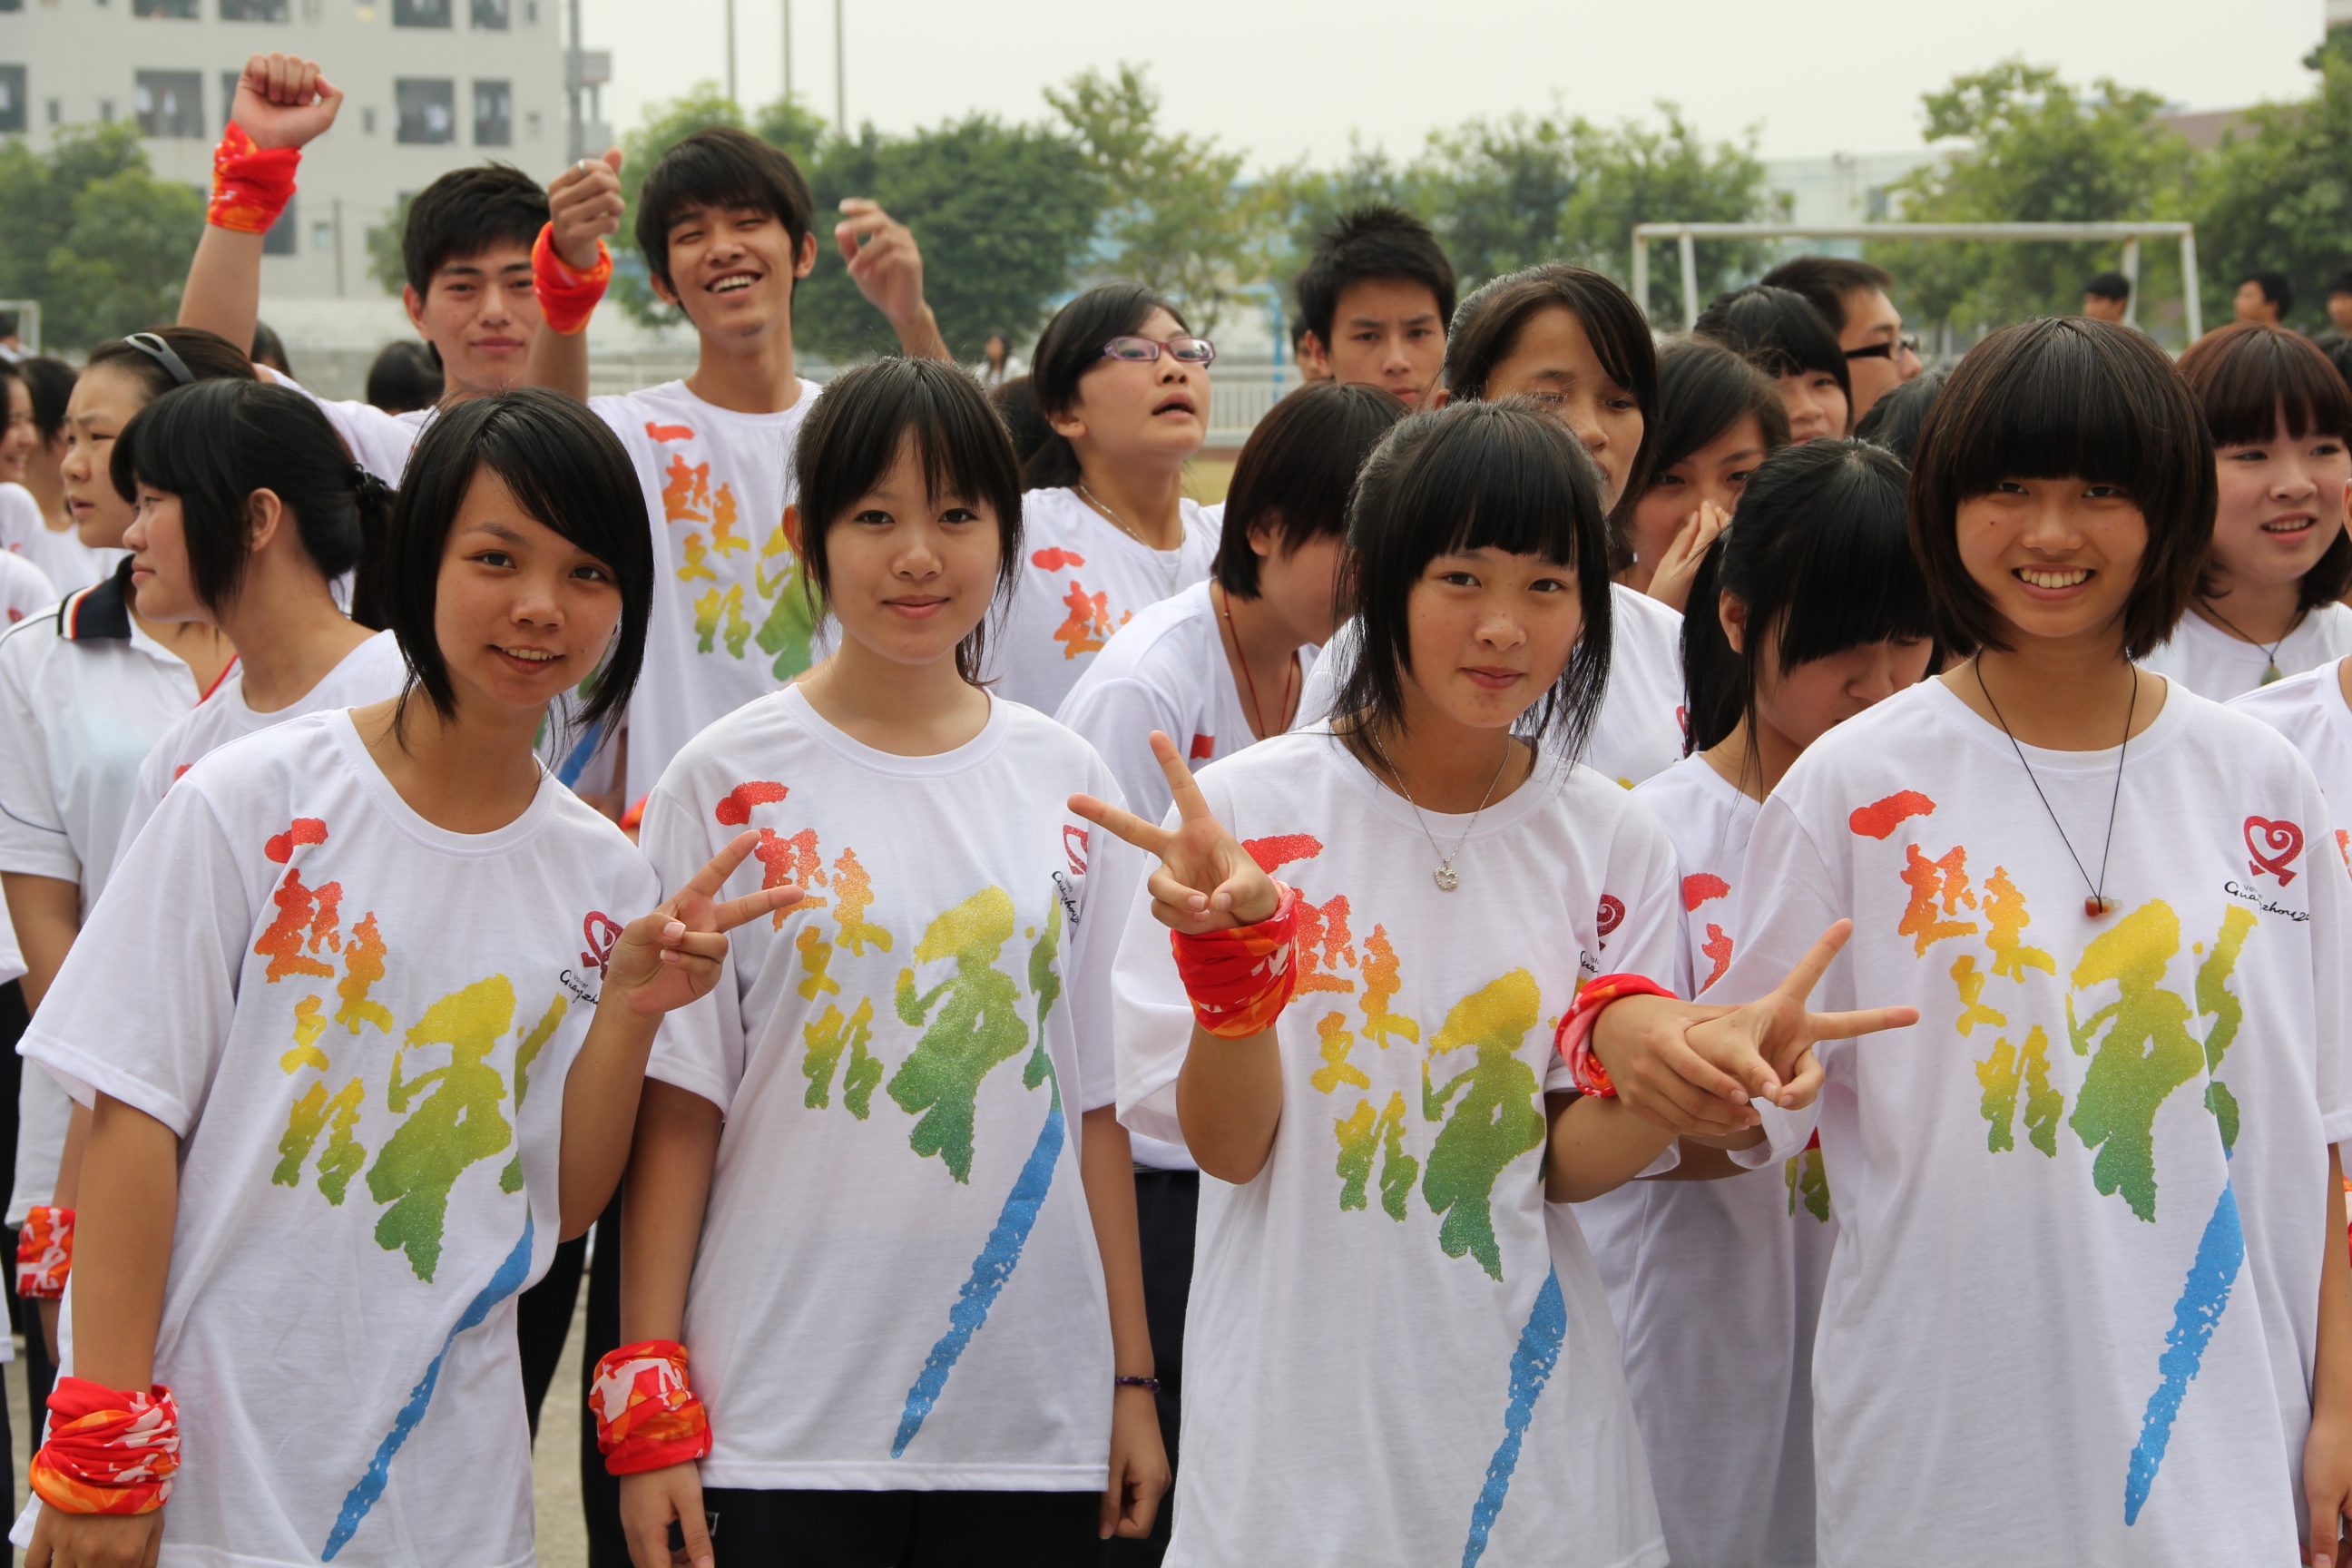 廣東省經濟貿易職業技術學校學生會